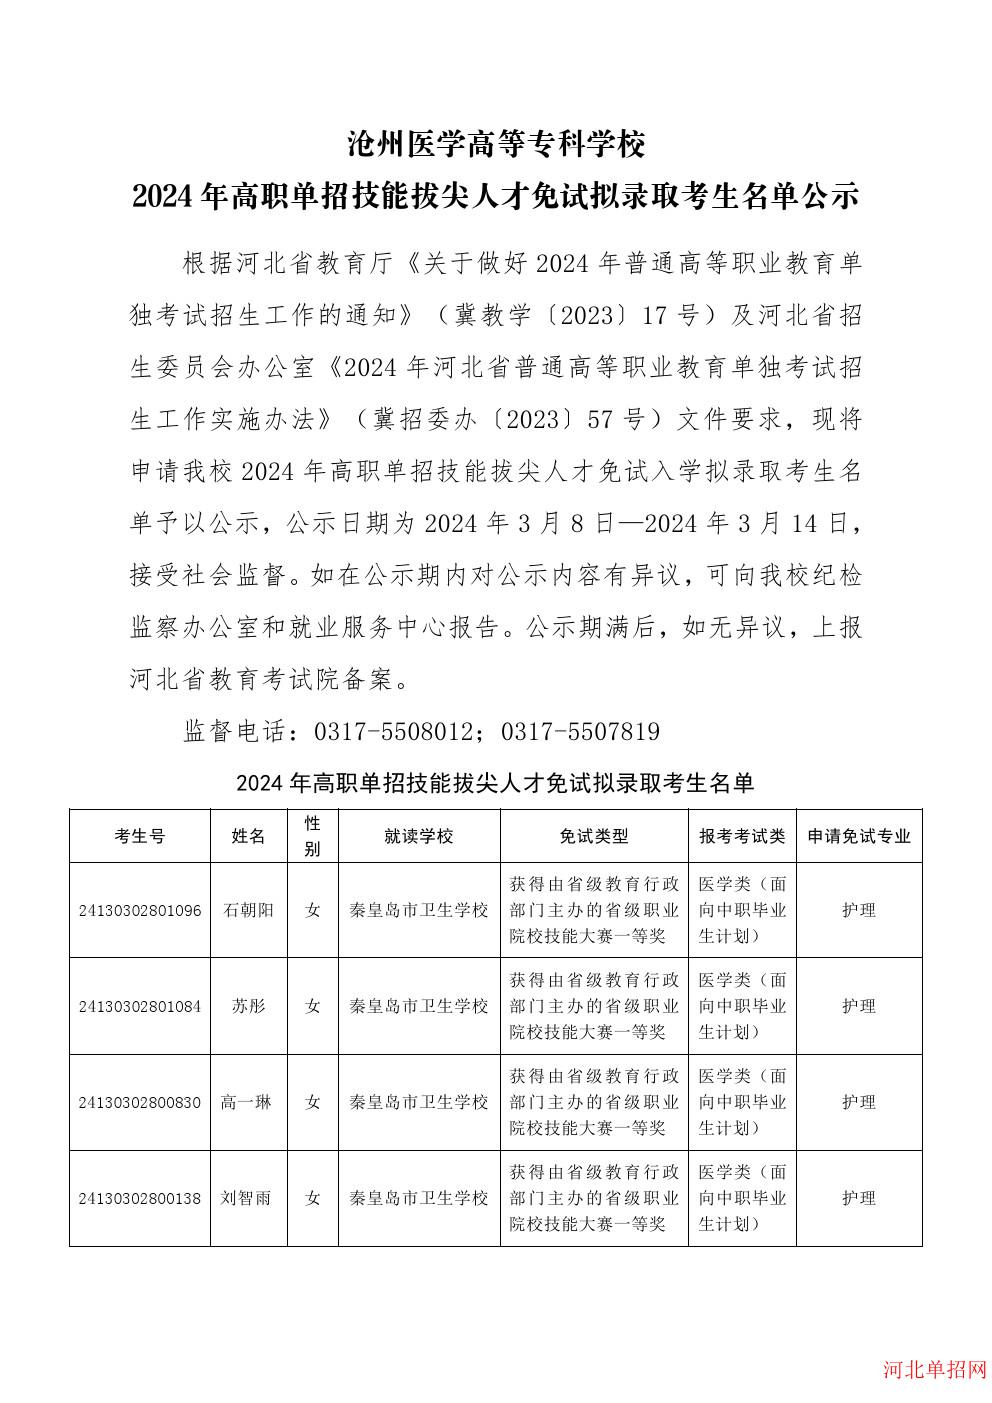 沧州医学高等专科学校2024年高职单招技能拔尖人才免试拟录取考生名单公示 图1